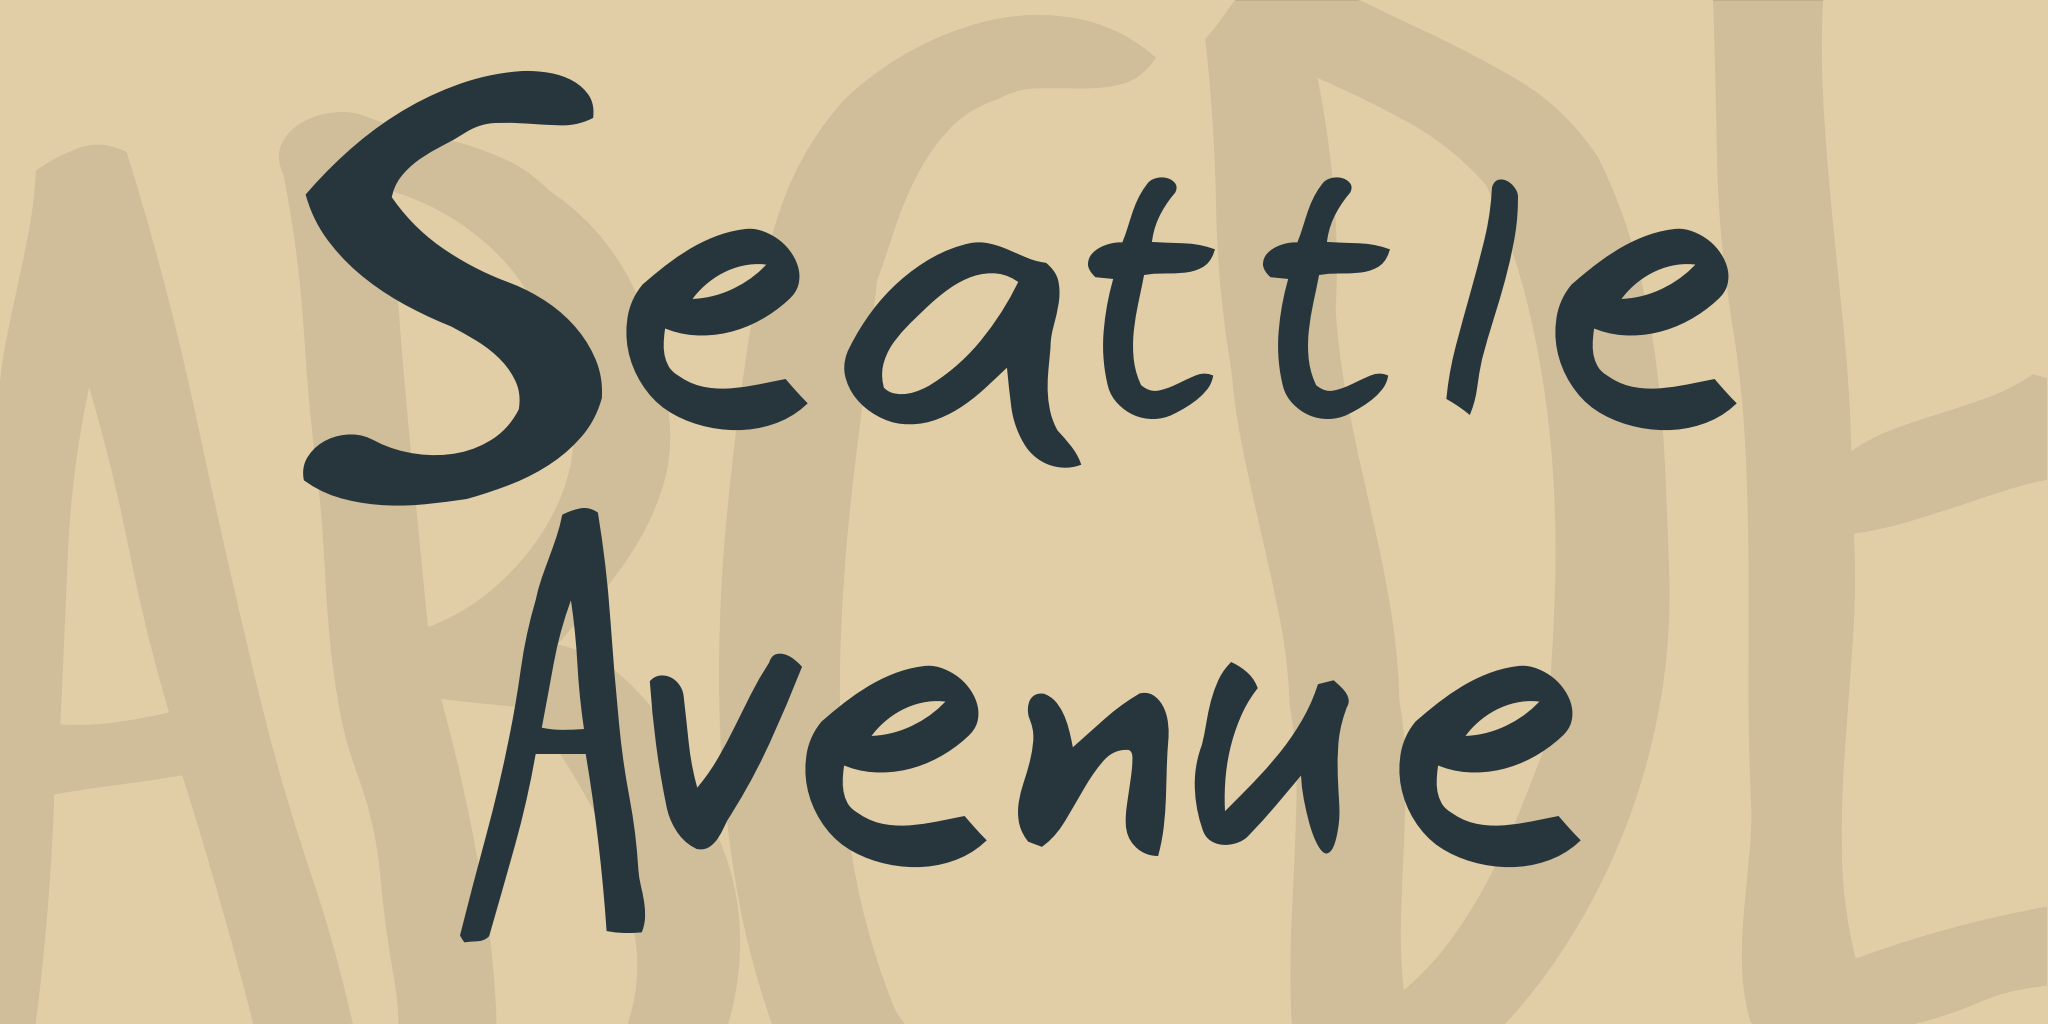 Seattle Avenue